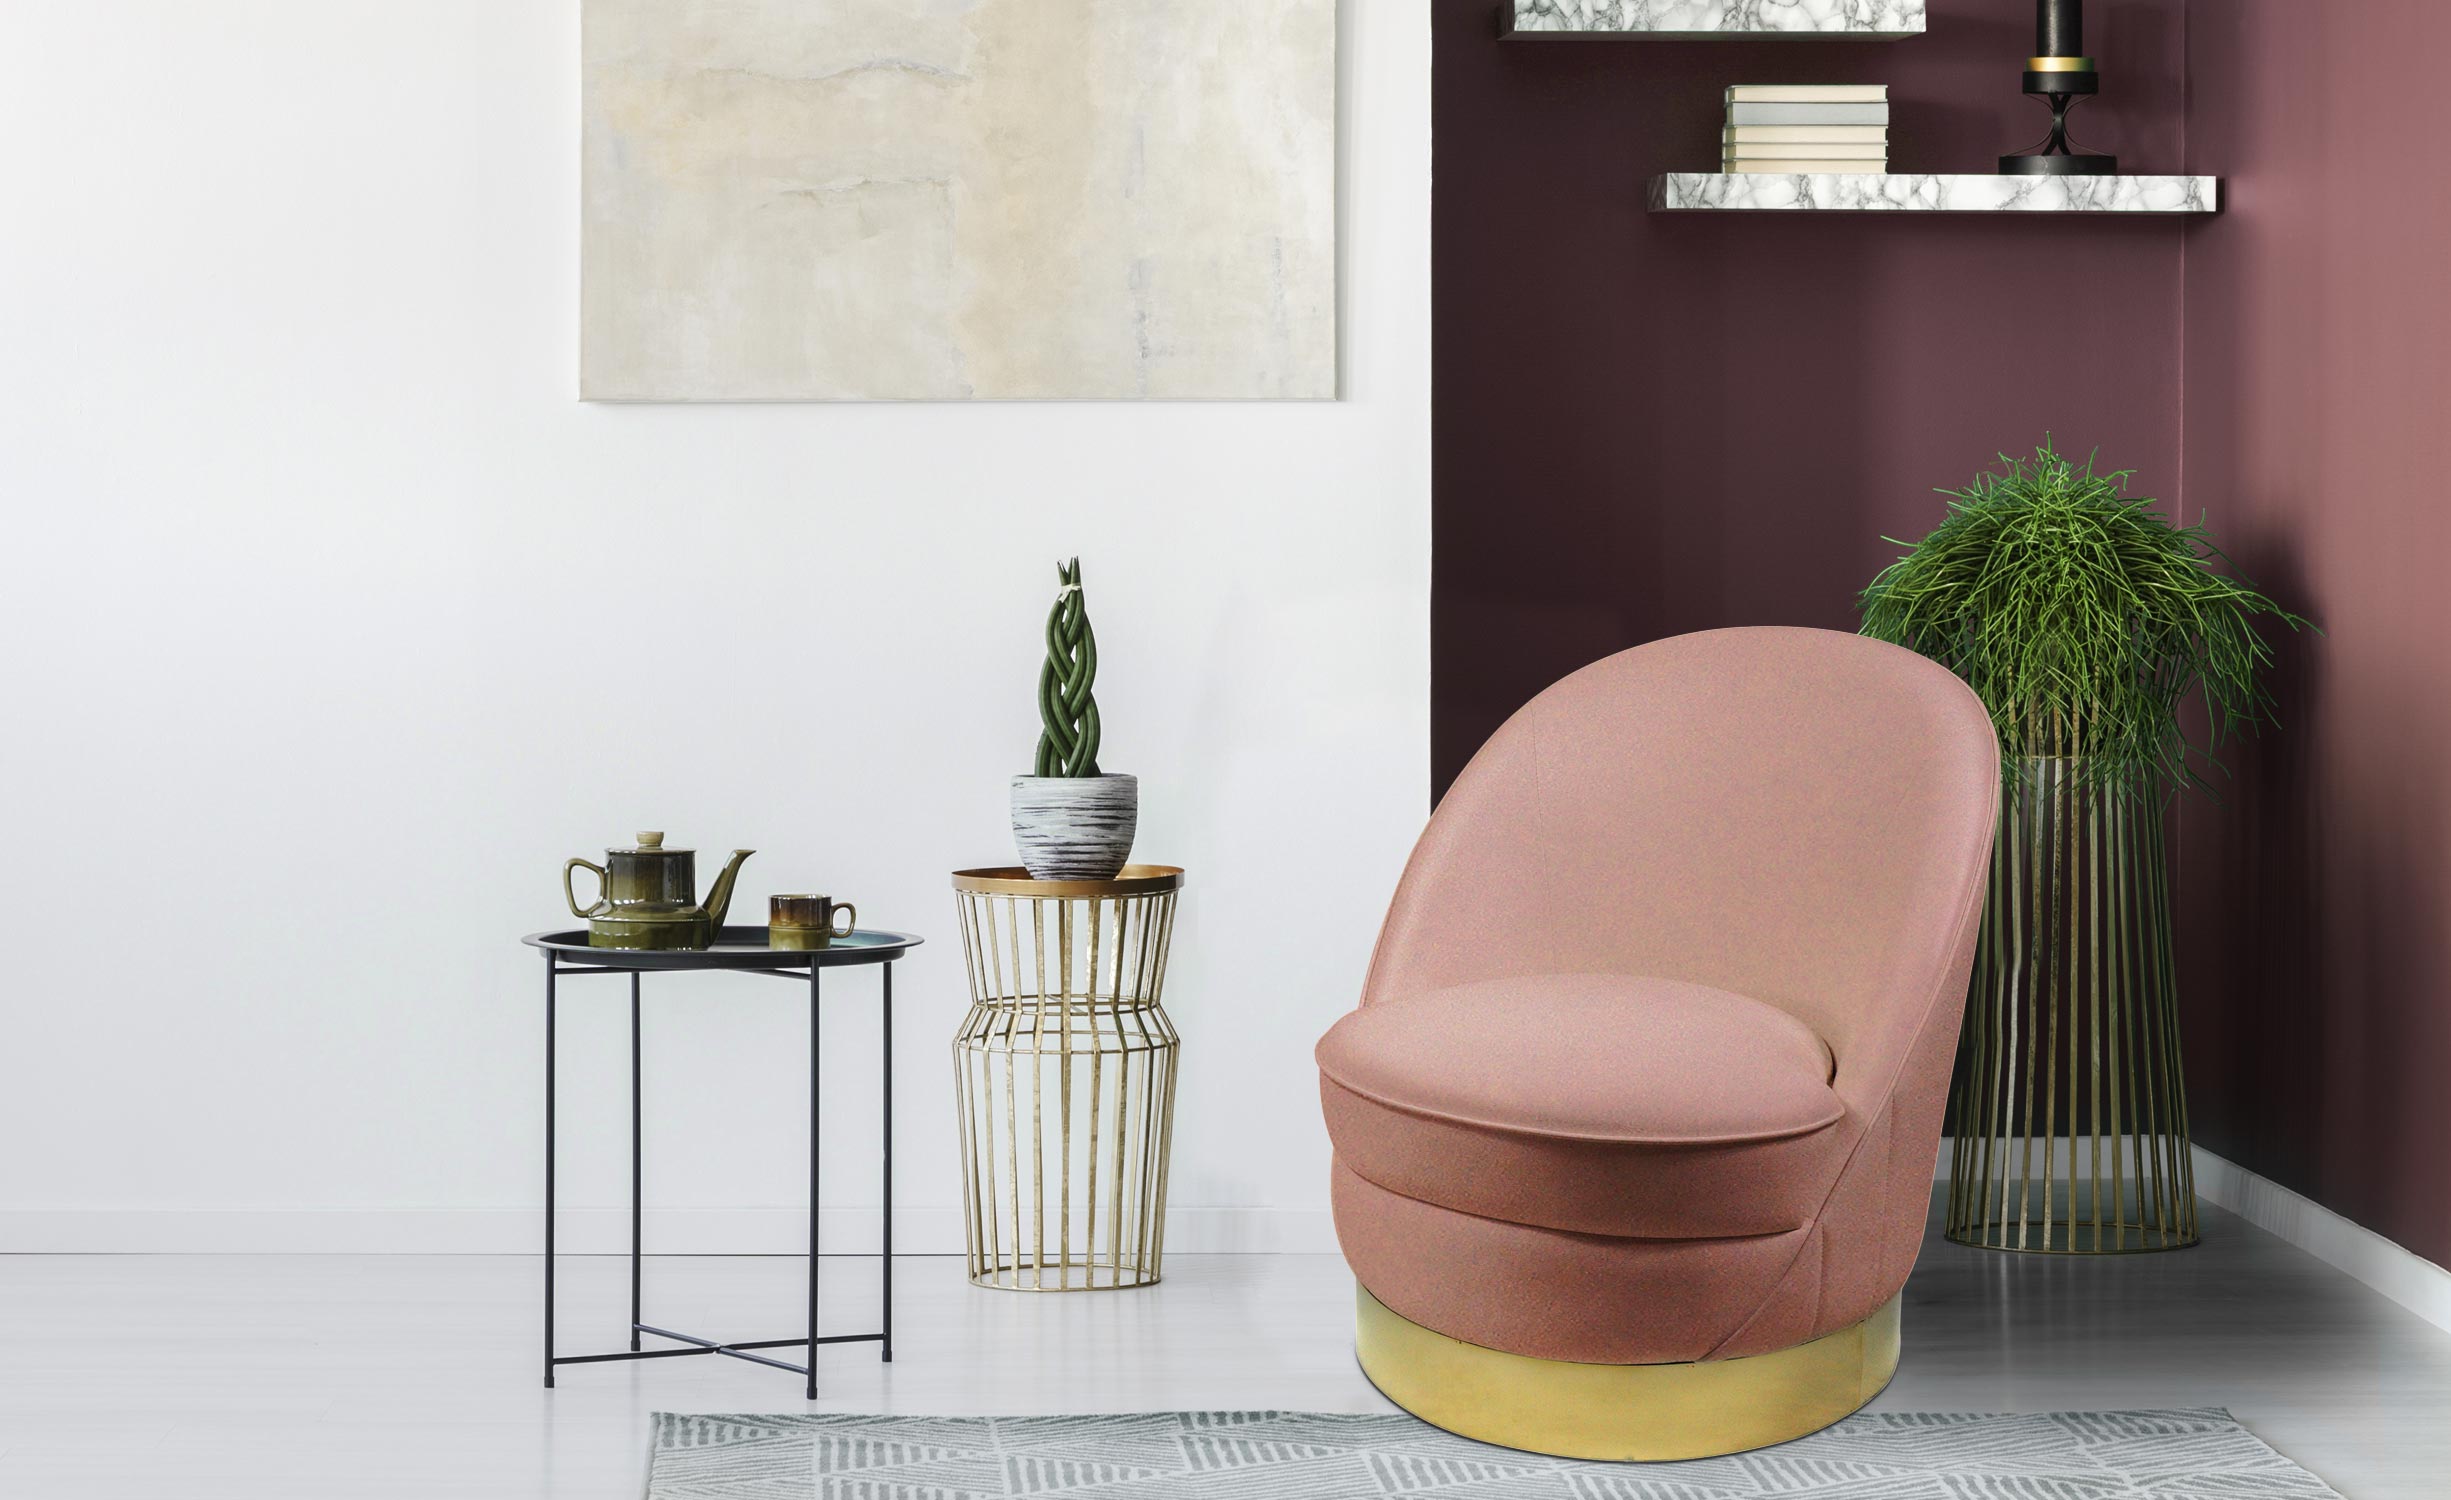 Aristy ronde fauteuil roze fluweel